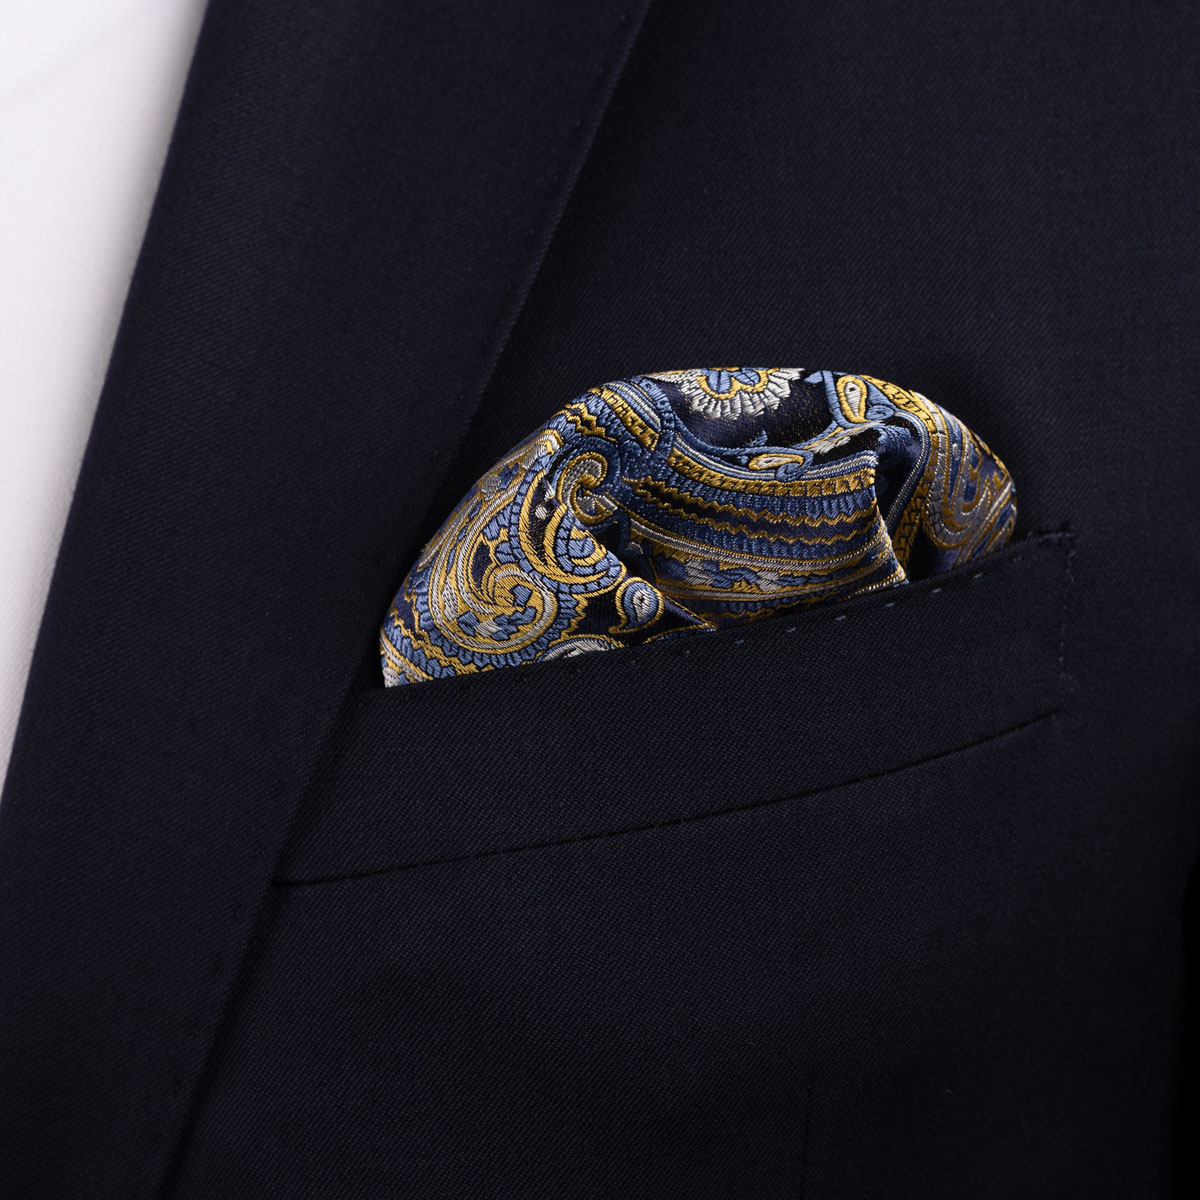 Einstecktuch aus Seide in dunkelblau mit goldenem Muster